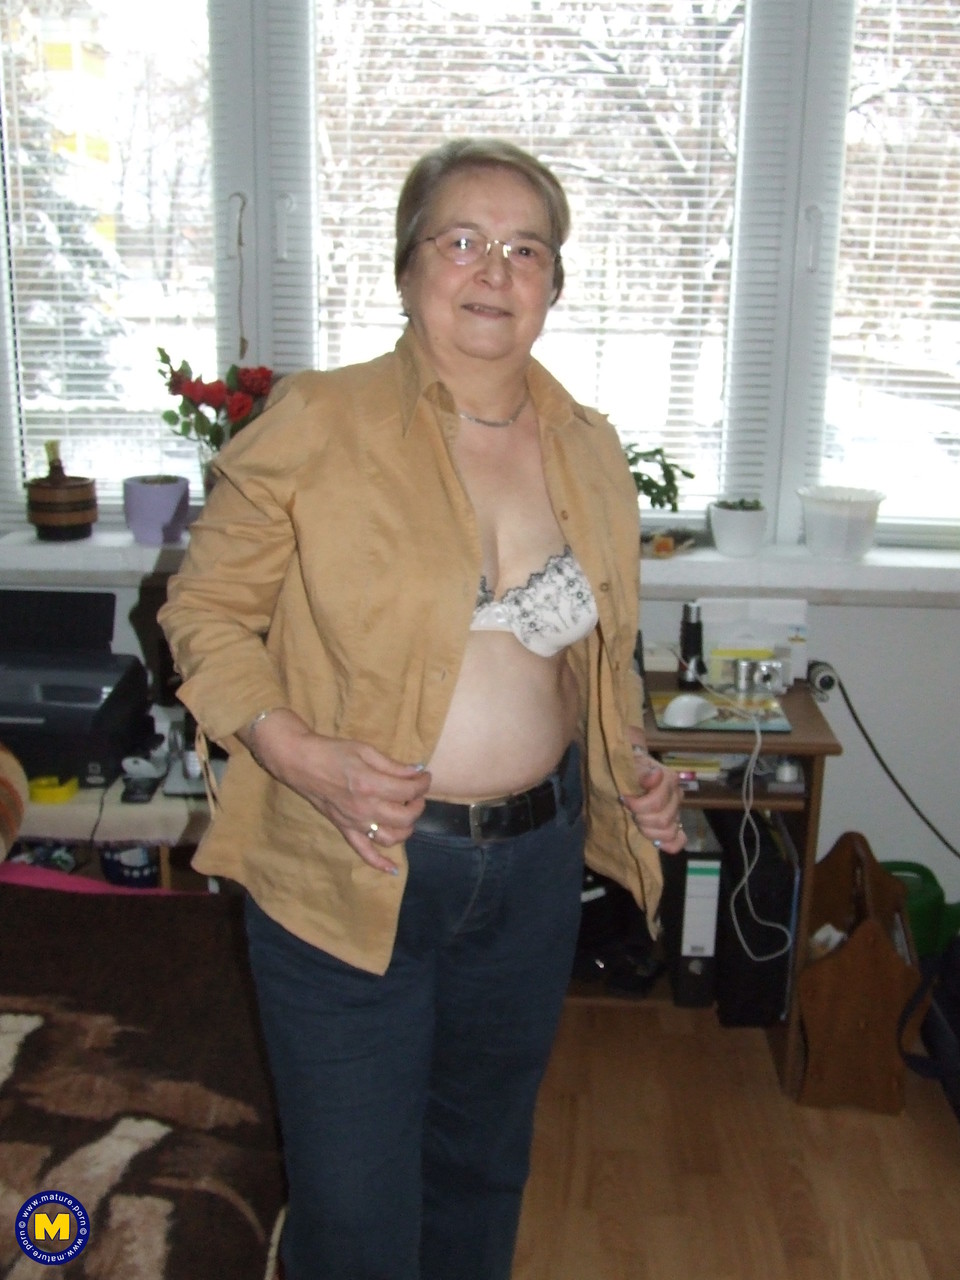 Fat European granny Sybille stripping off her clothes and skin tone tights porno foto #423867228 | Mature NL Pics, Sybille, Granny, mobiele porno